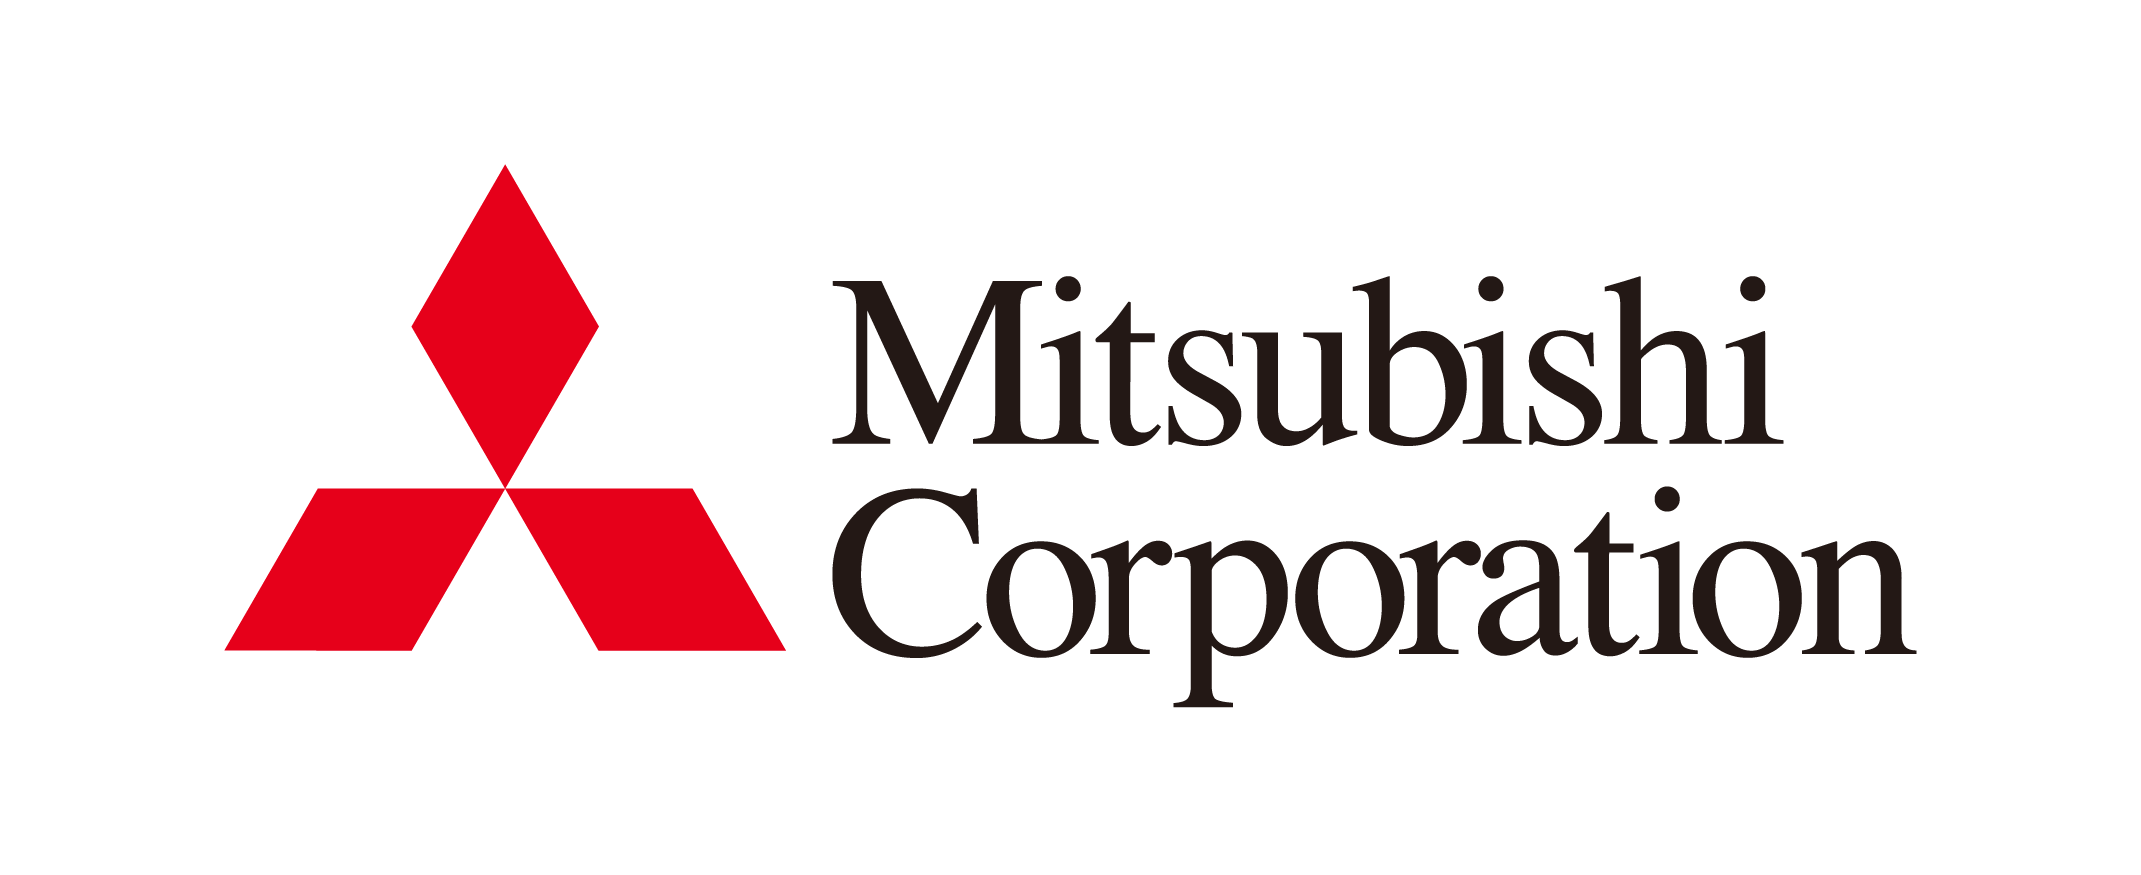 Mitsubishi corporation